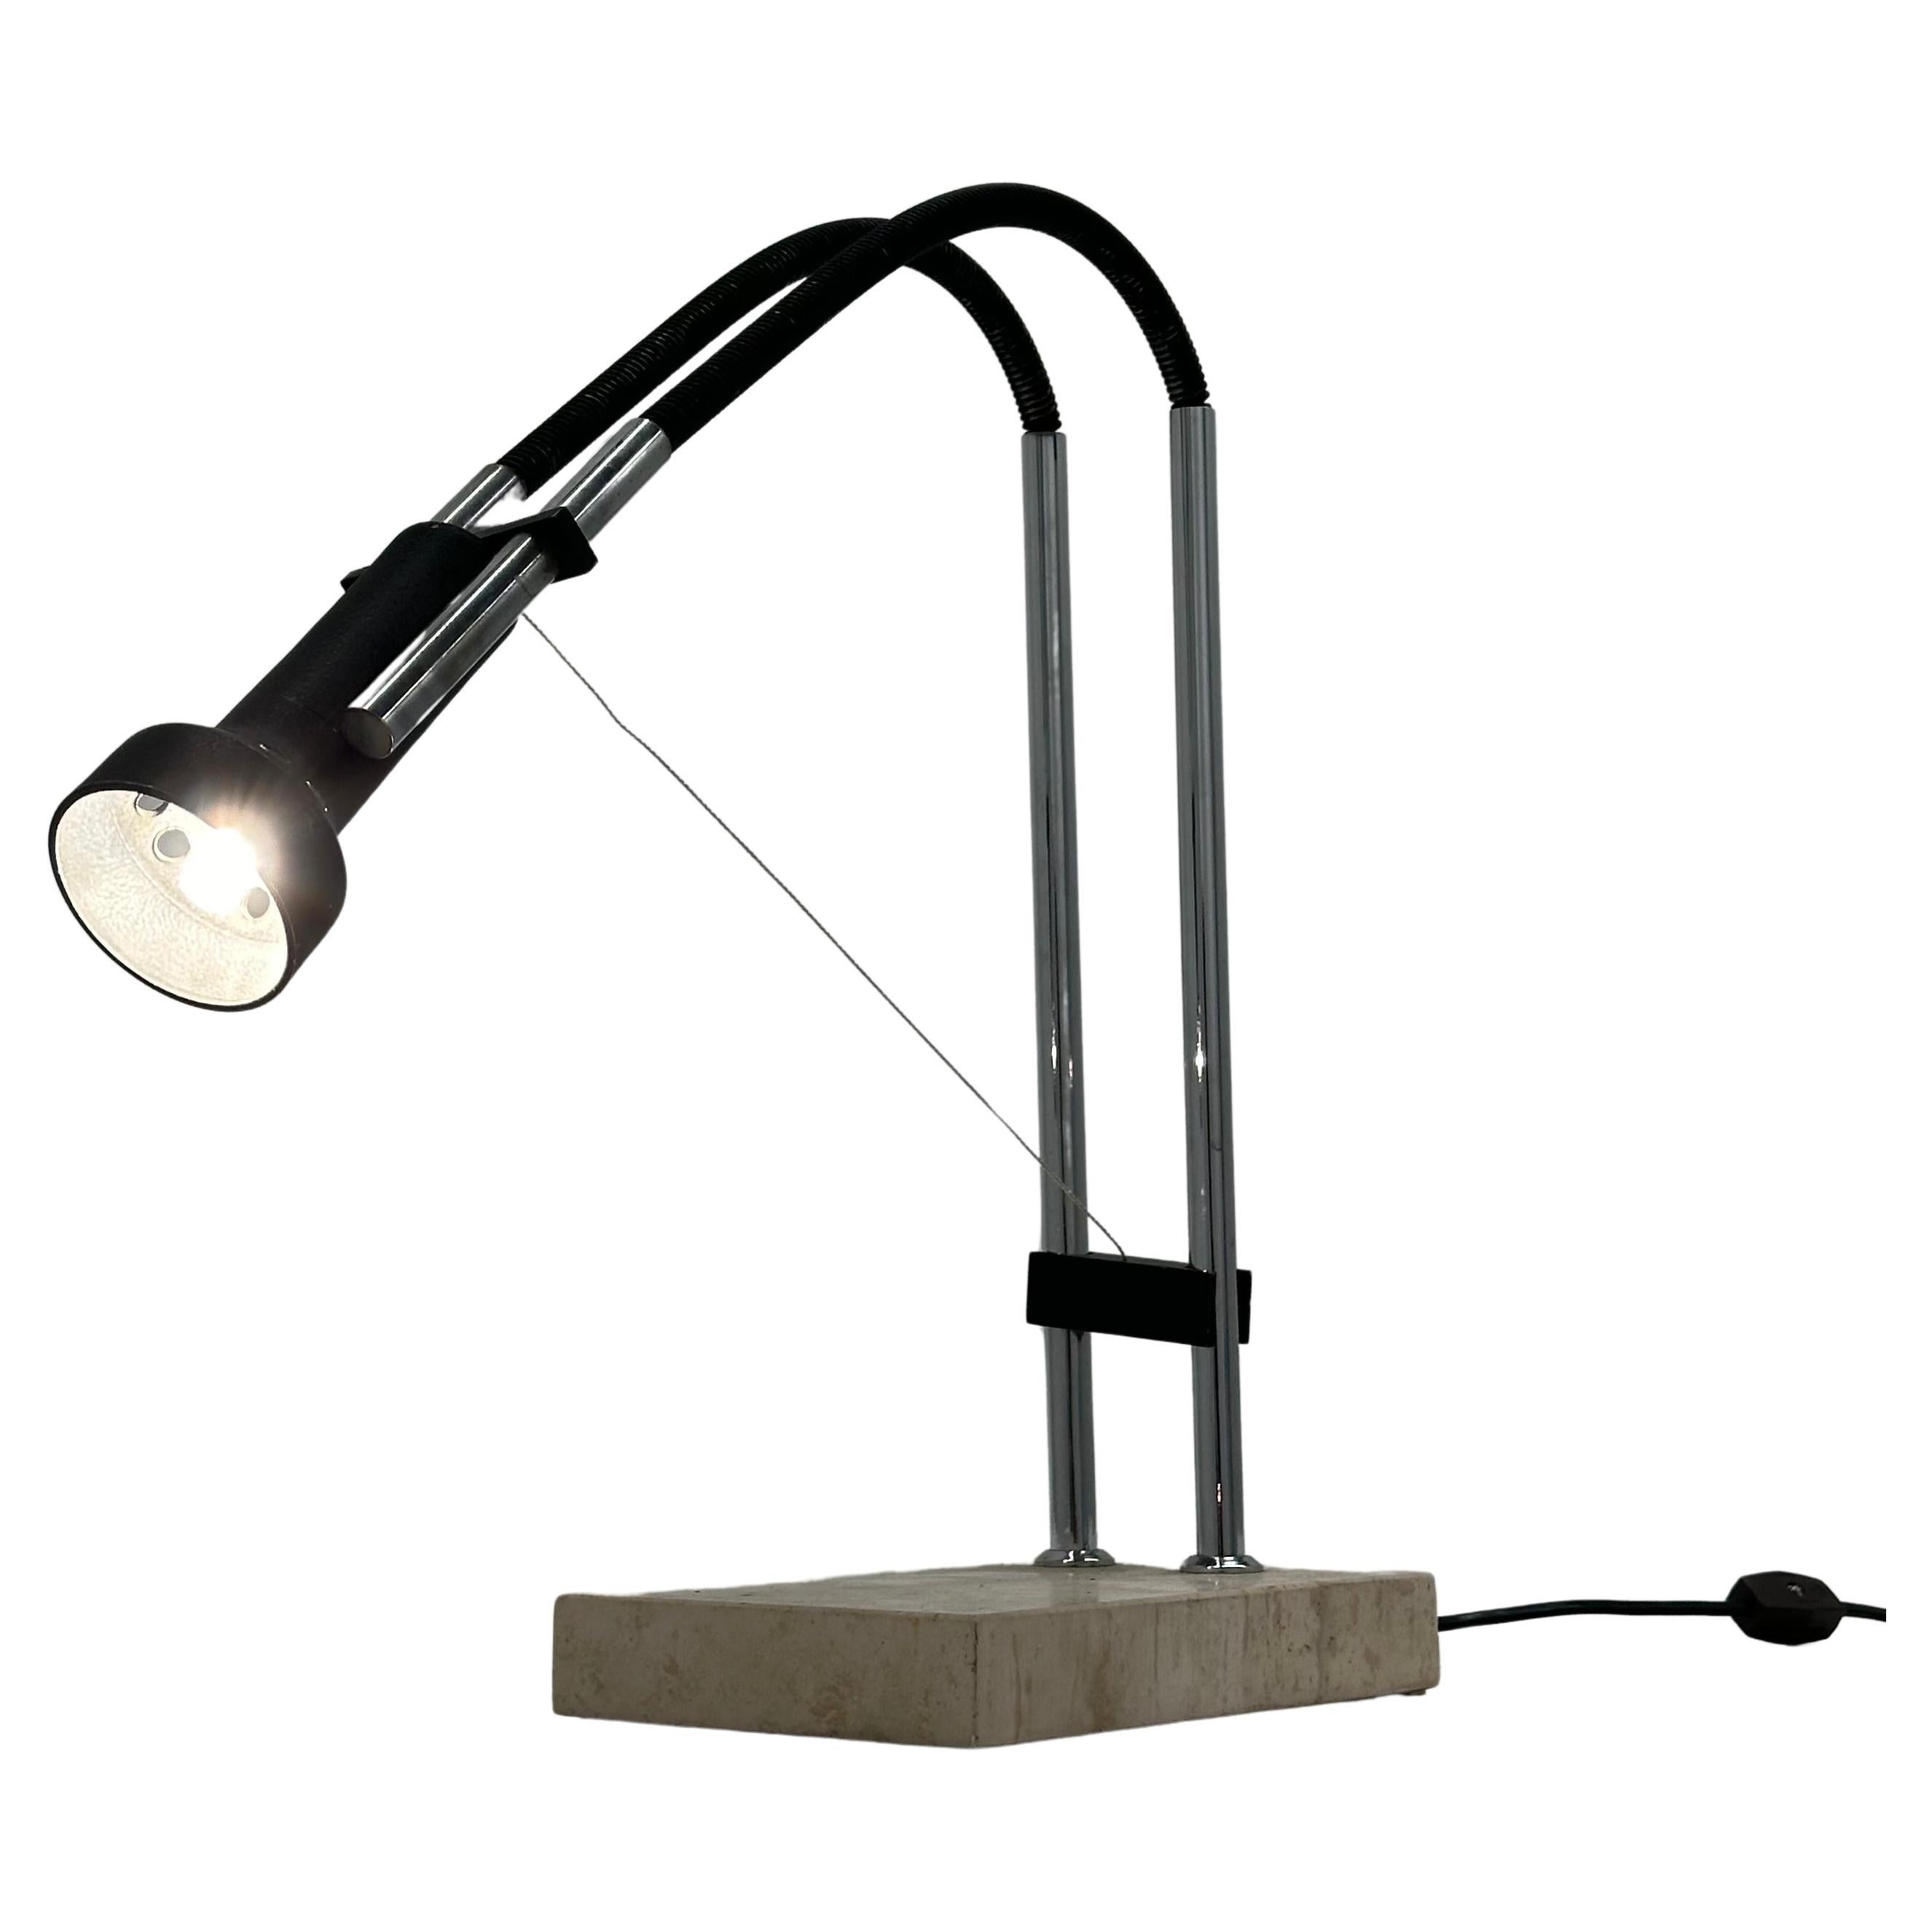 Angelo Lelii model 14165 "Flexa" table lamp for Arredoluce Italy